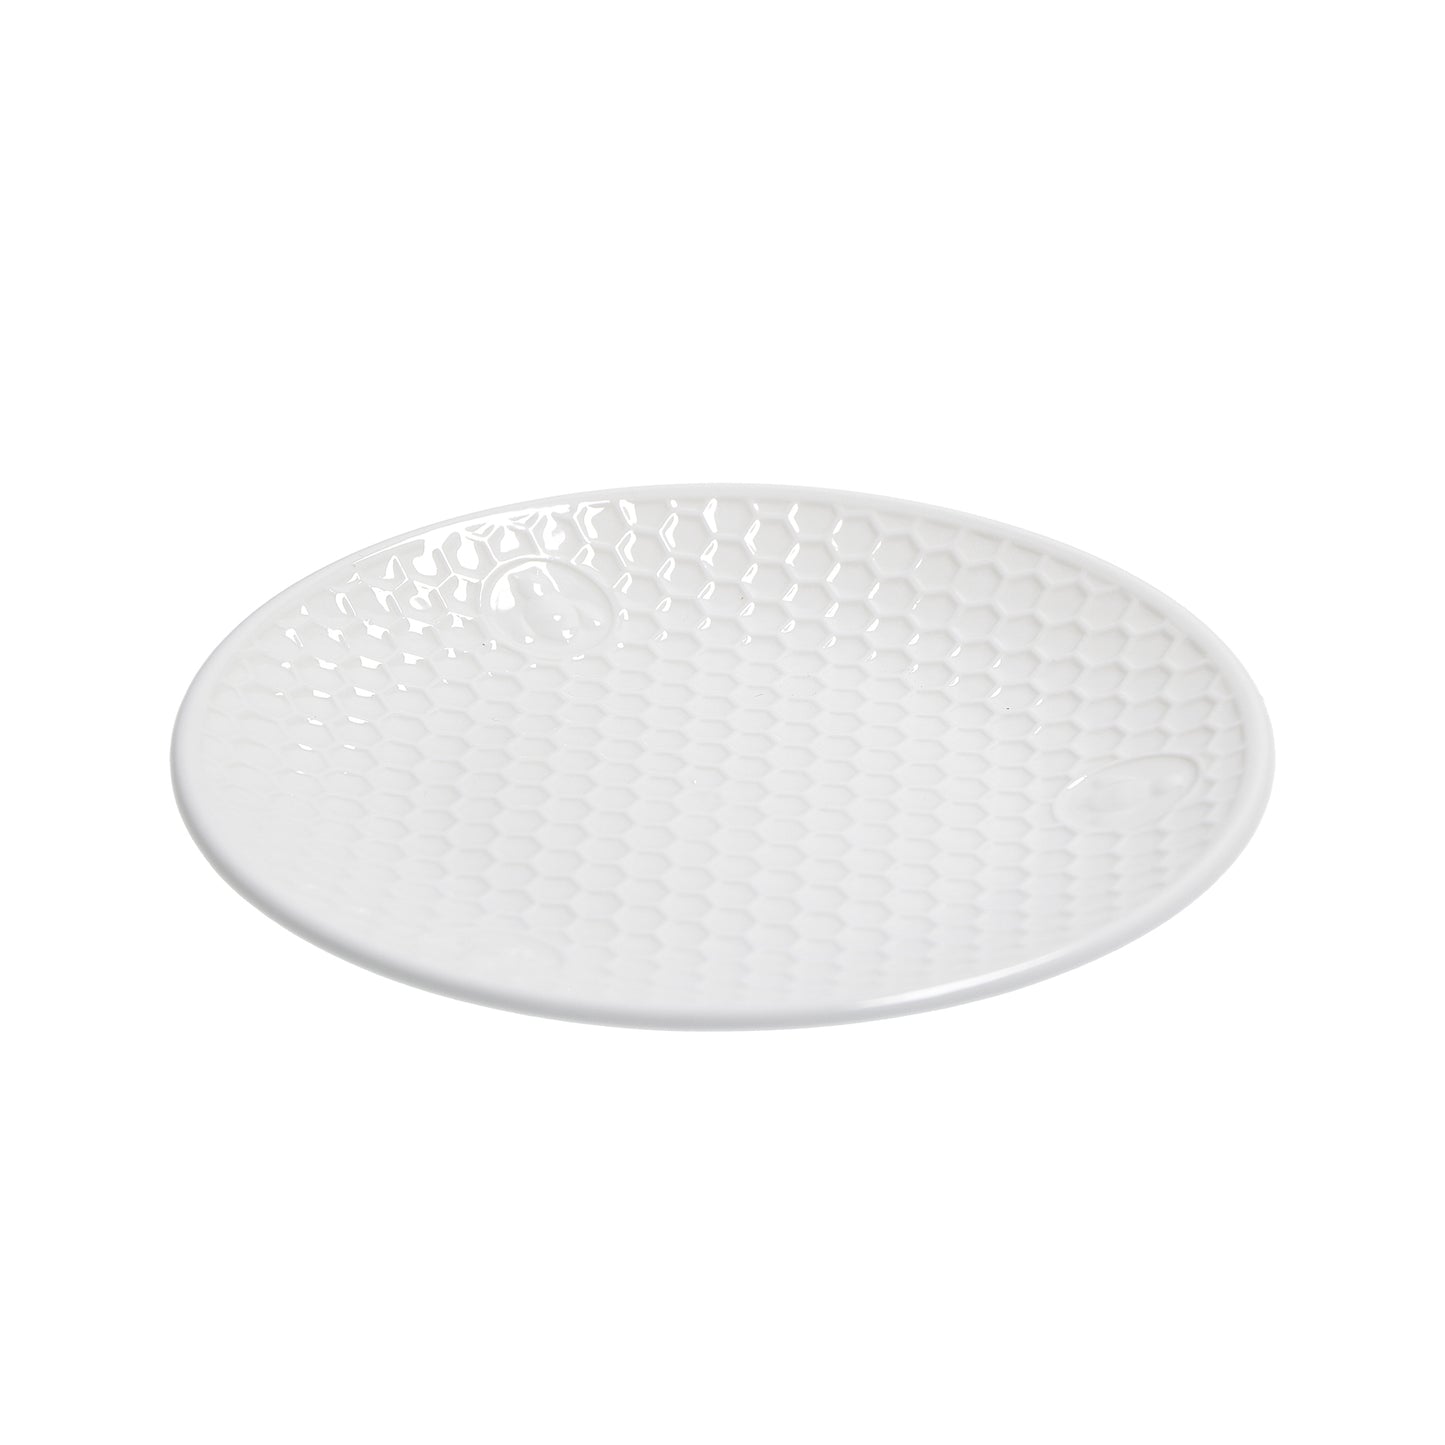 Piattino in porcellana bianca. Dimensioni: h2 cm, Ø 15 Lavabile in lavastoviglie Utilizzabile in microonde Utilizzabile in forno tradizionale